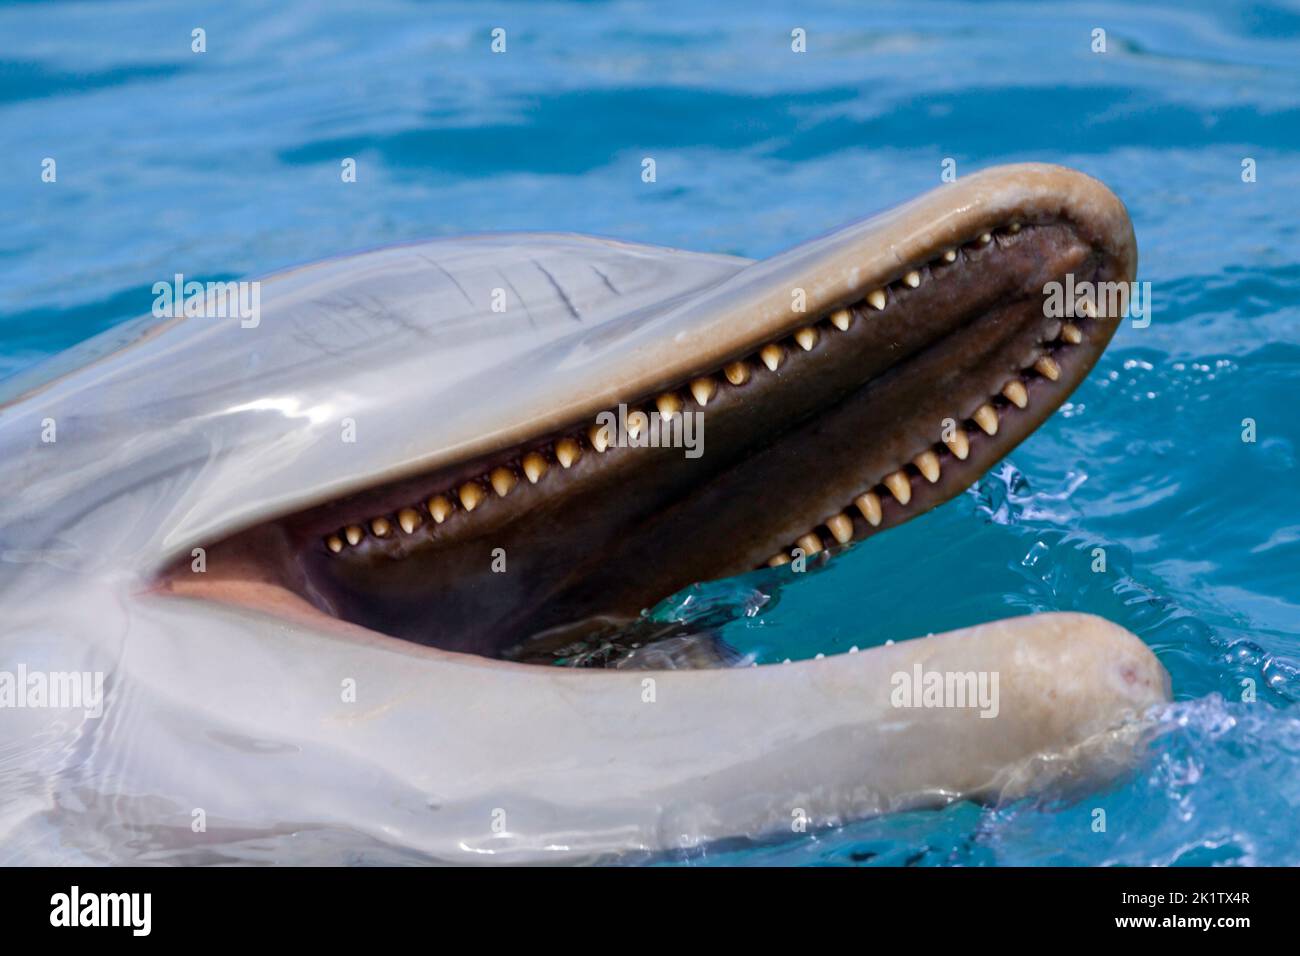 Una buena mirada a los dientes de un delfín nariz de botella común, Tursiops truncatus, Curacao, Antillas Holandesas, Caribe. Foto de stock